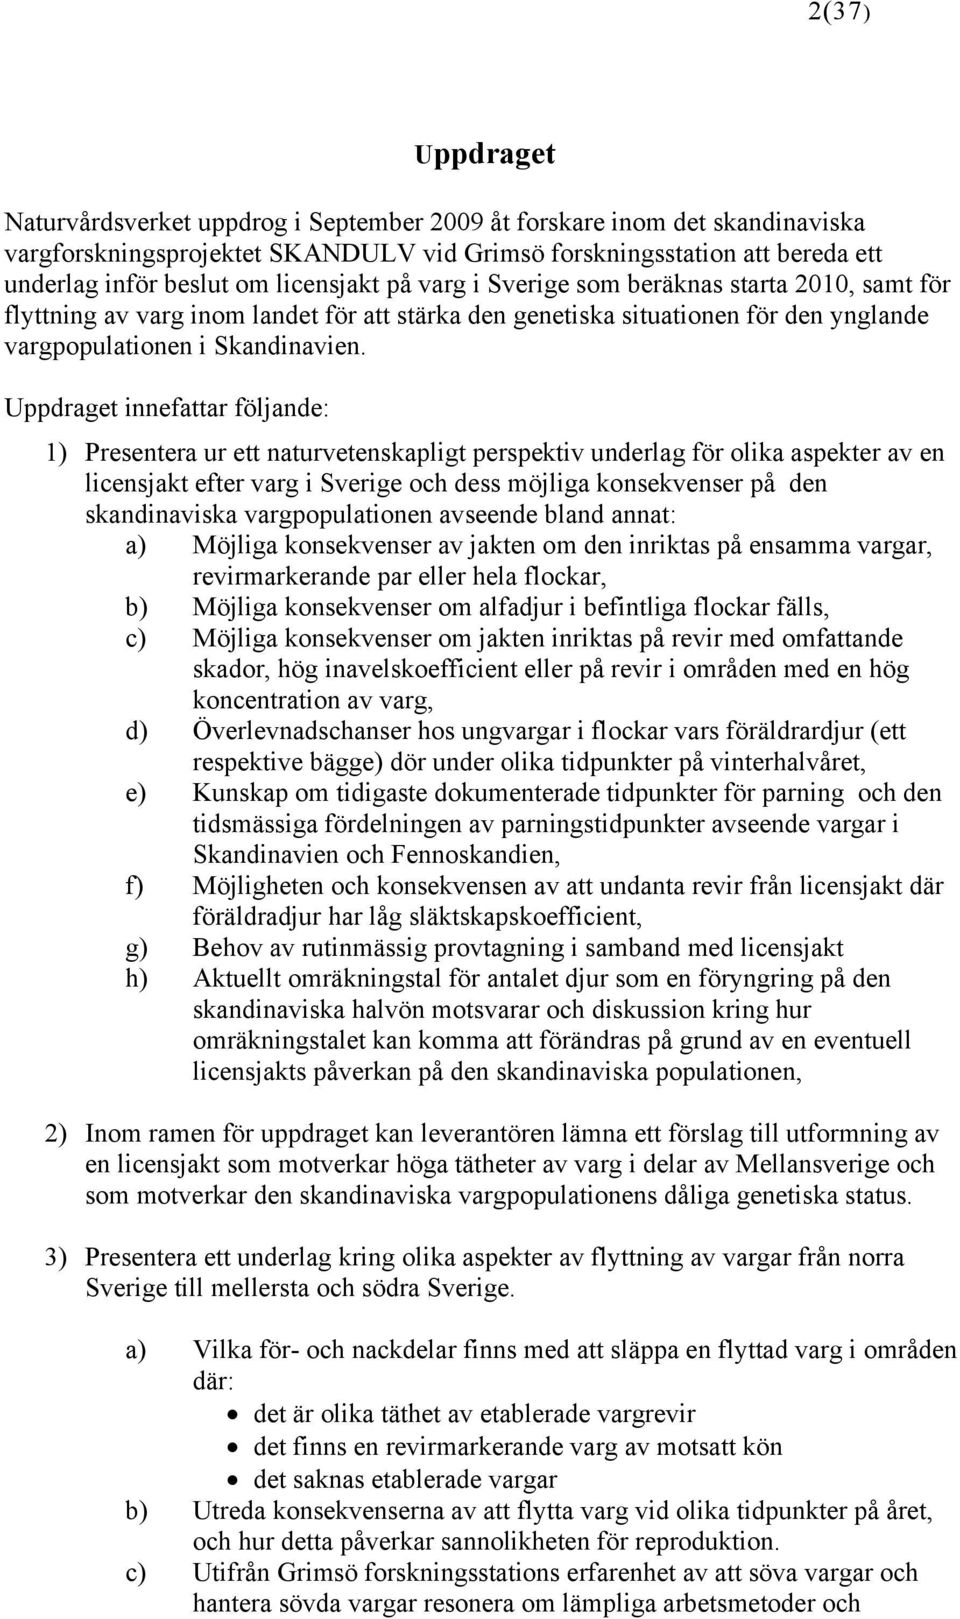 Uppdraget innefattar följande: 1) Presentera ur ett naturvetenskapligt perspektiv underlag för olika aspekter av en licensjakt efter varg i Sverige och dess möjliga konsekvenser på den skandinaviska